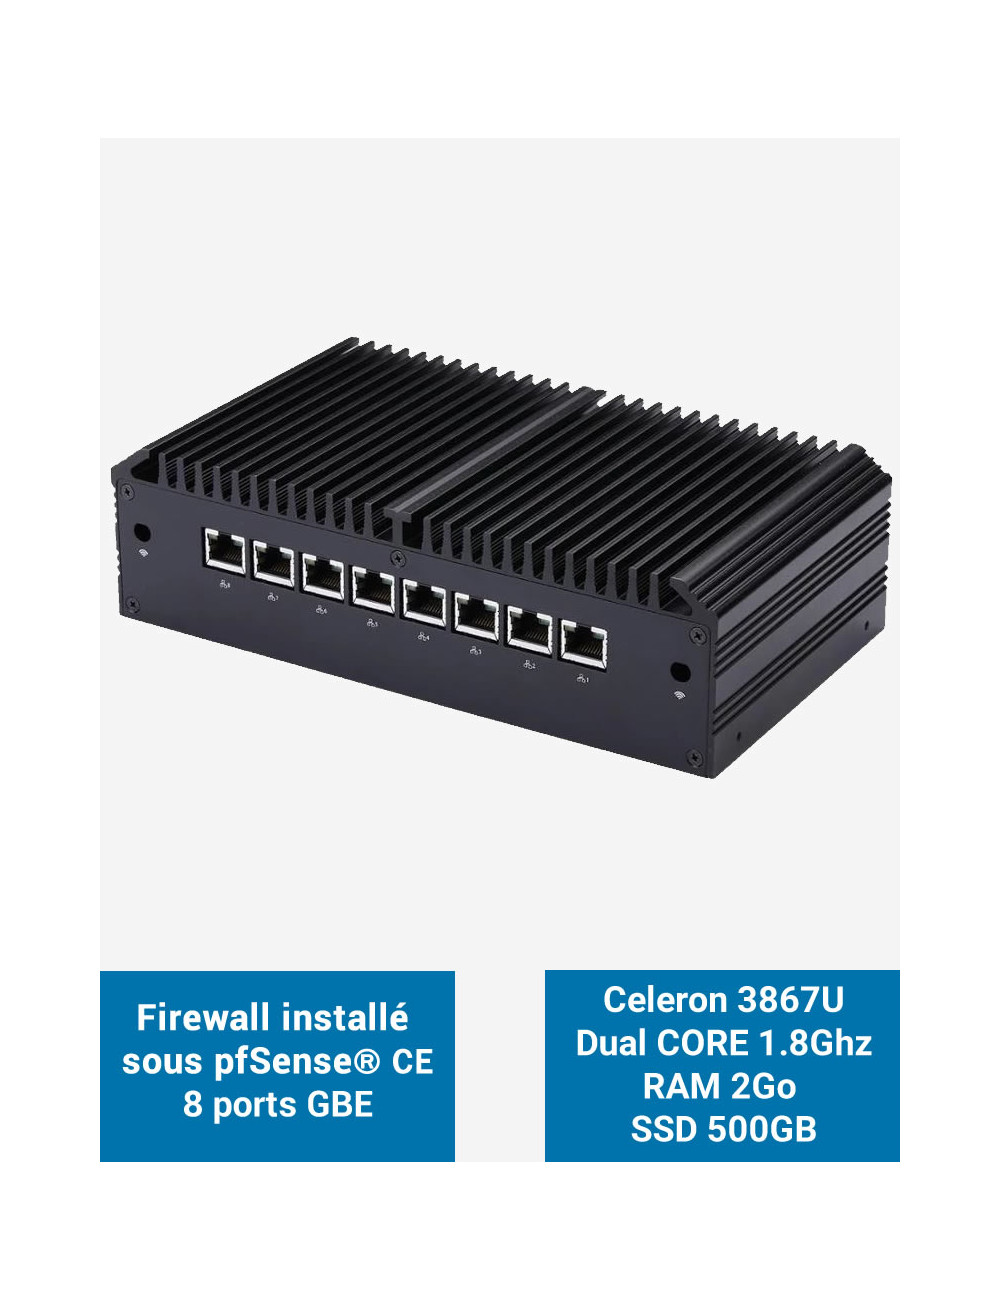 Firewall Q8x Celeron 3867U 8 ports GbE 2GB 500GB